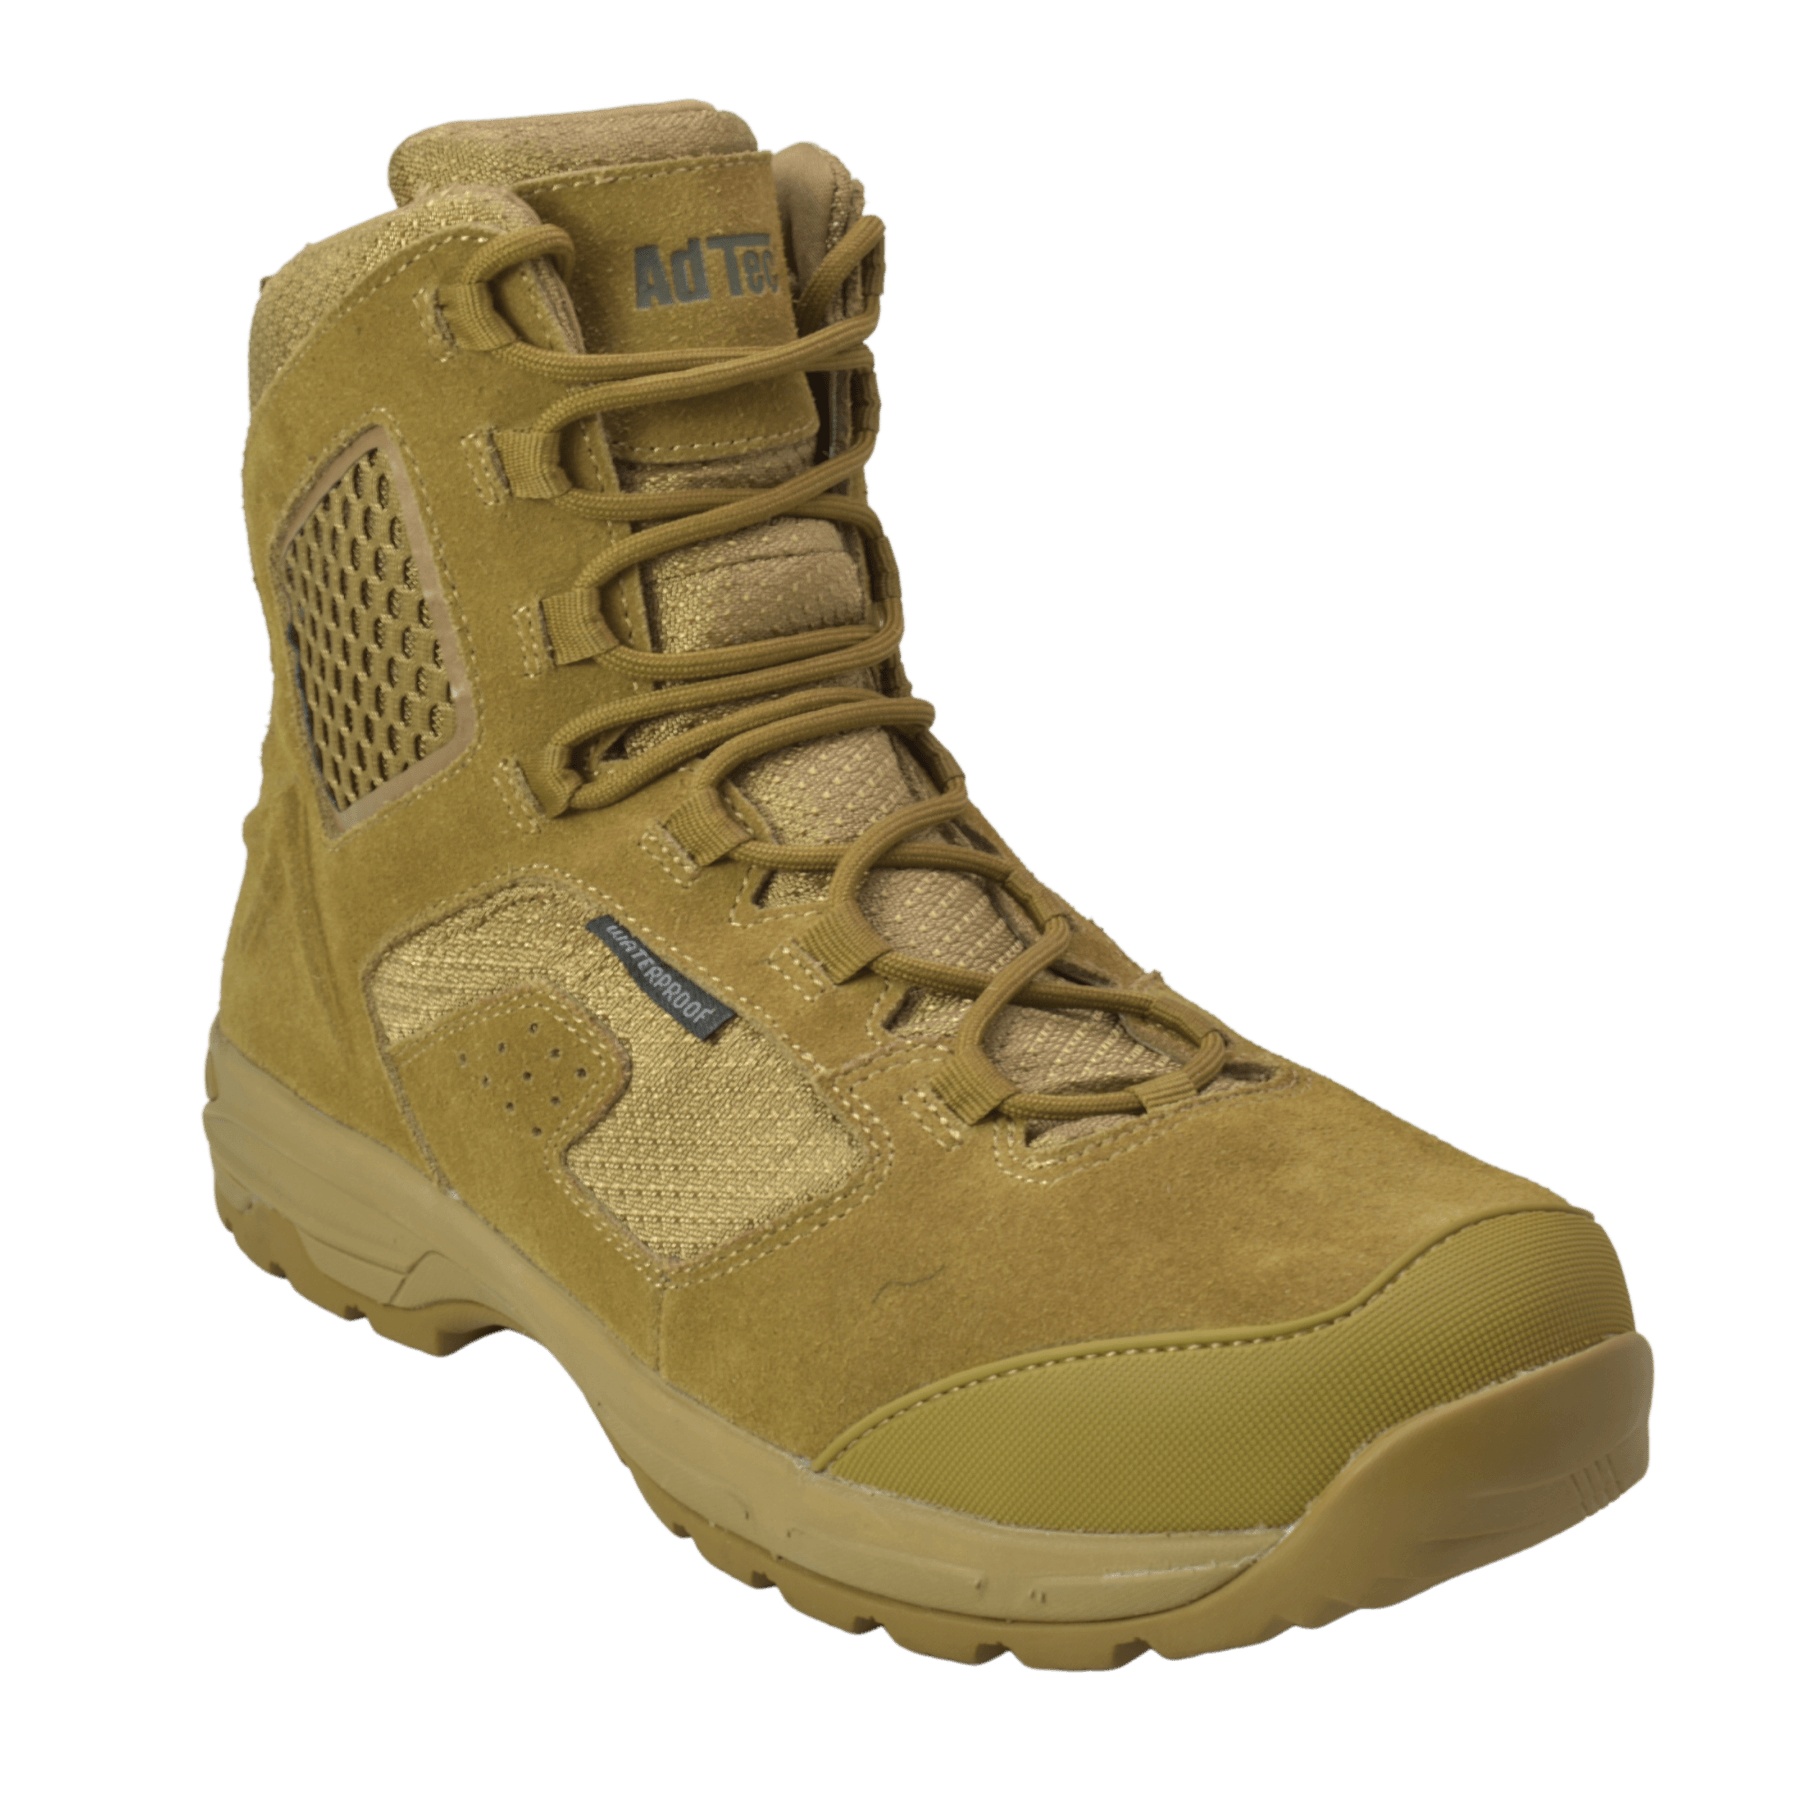 AdTec Men's 8" Suede Leather Side Zipper Waterproof Tactical Boot Coyote - Flyclothing LLC